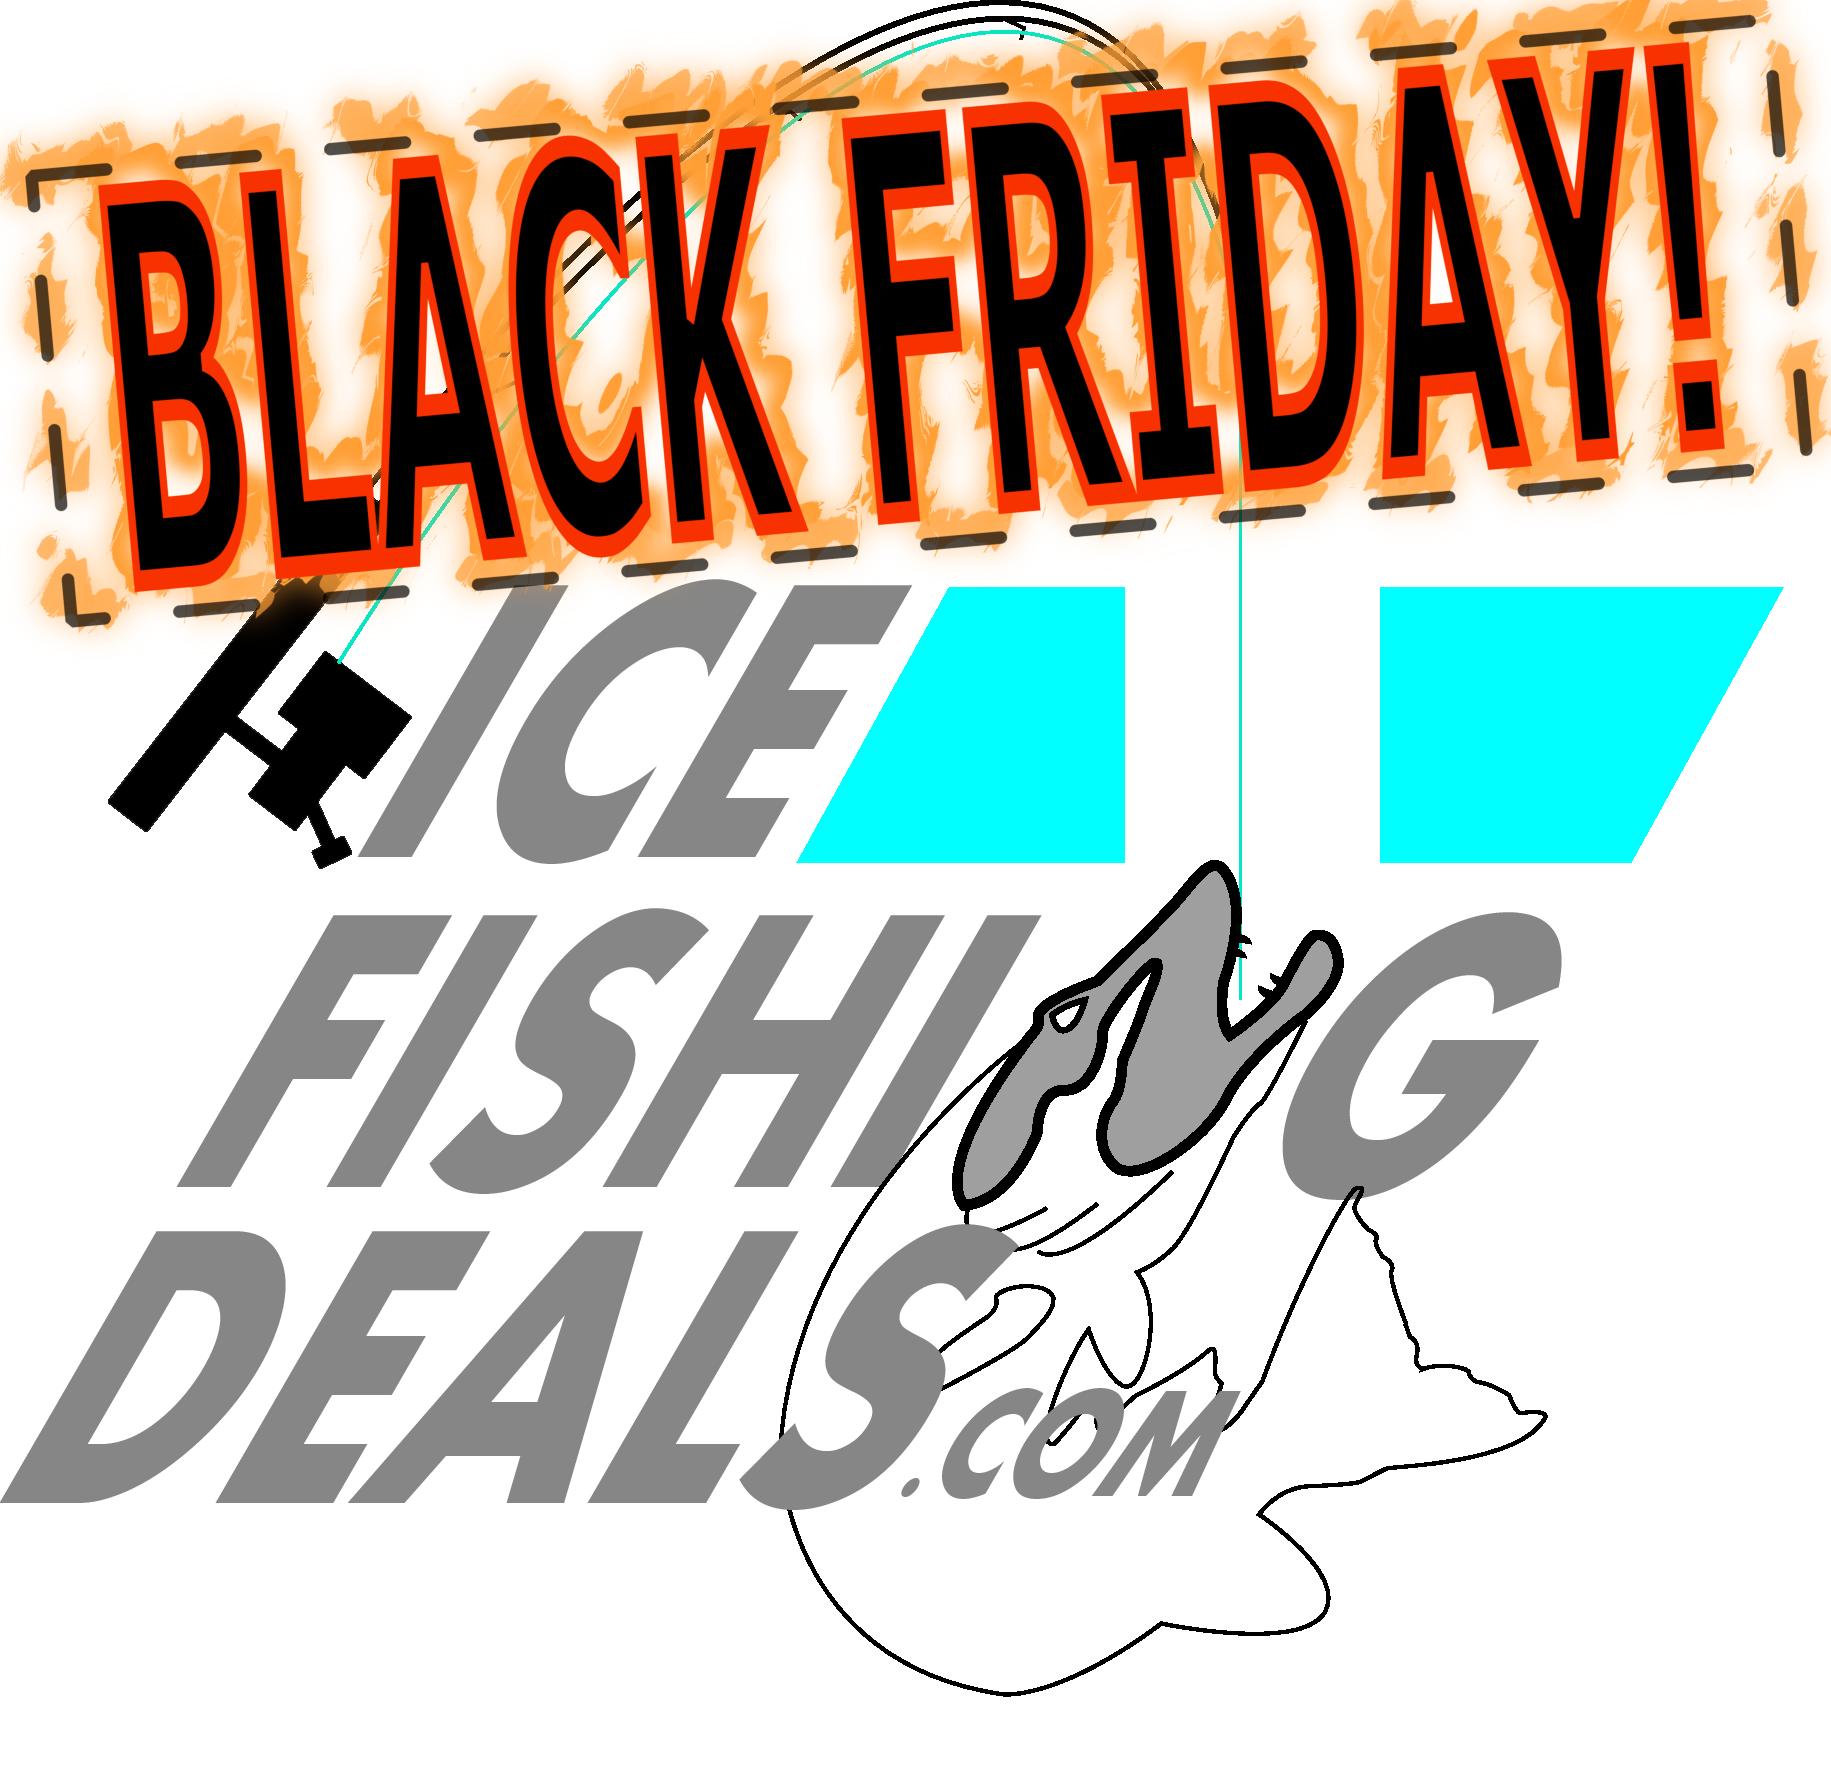 Black Friday Ice Fishing Deal Roundup (2020) – IceFishingDeals